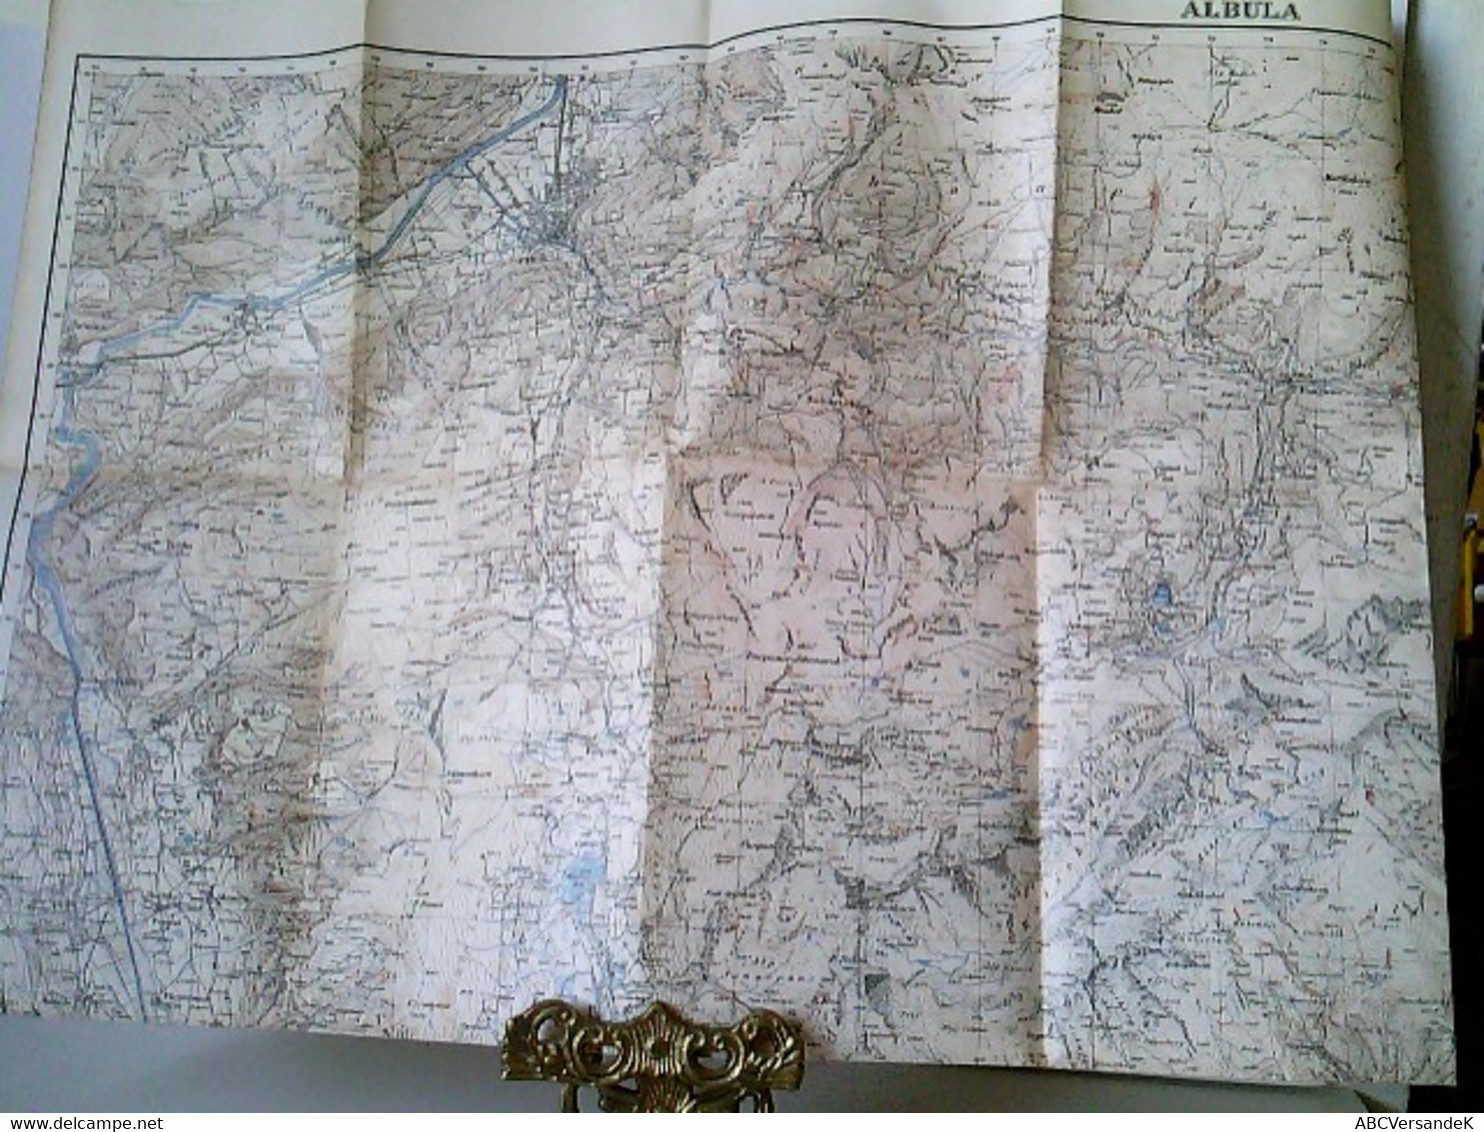 Topographischer Atlas Der Schweiz. Albula. Maßstab 1 : 50 000. Gefalzt - Suiza